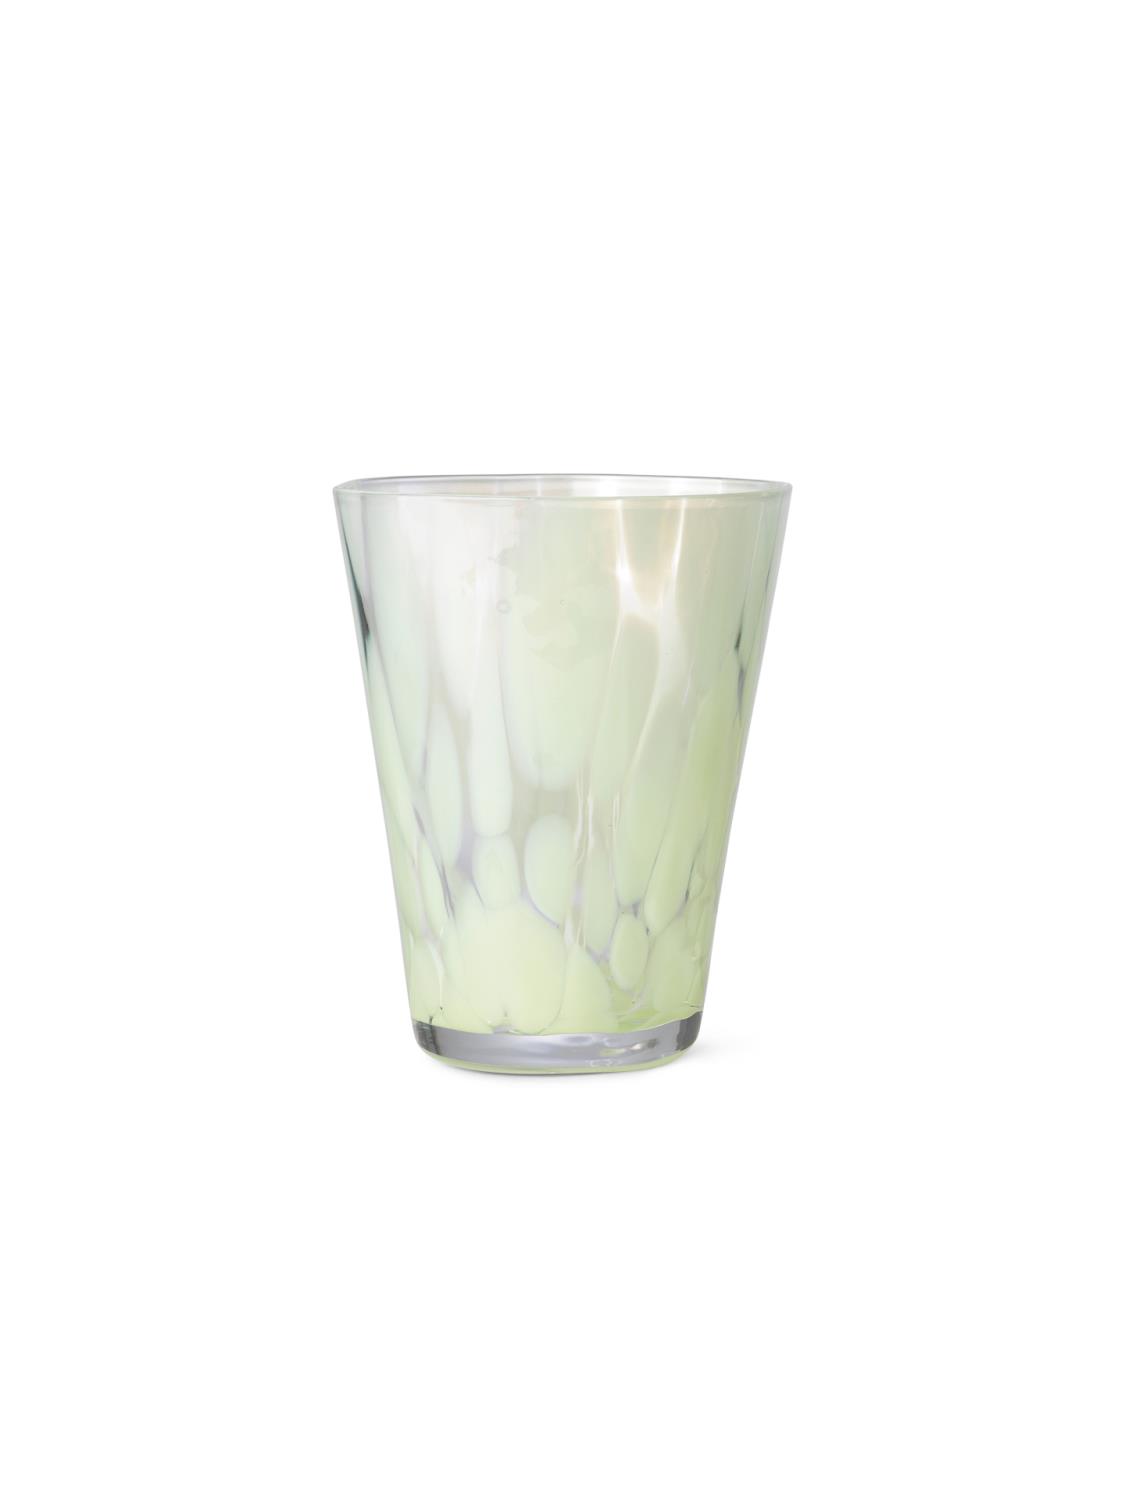 Ferm Living - Casca Glass - Fog Green